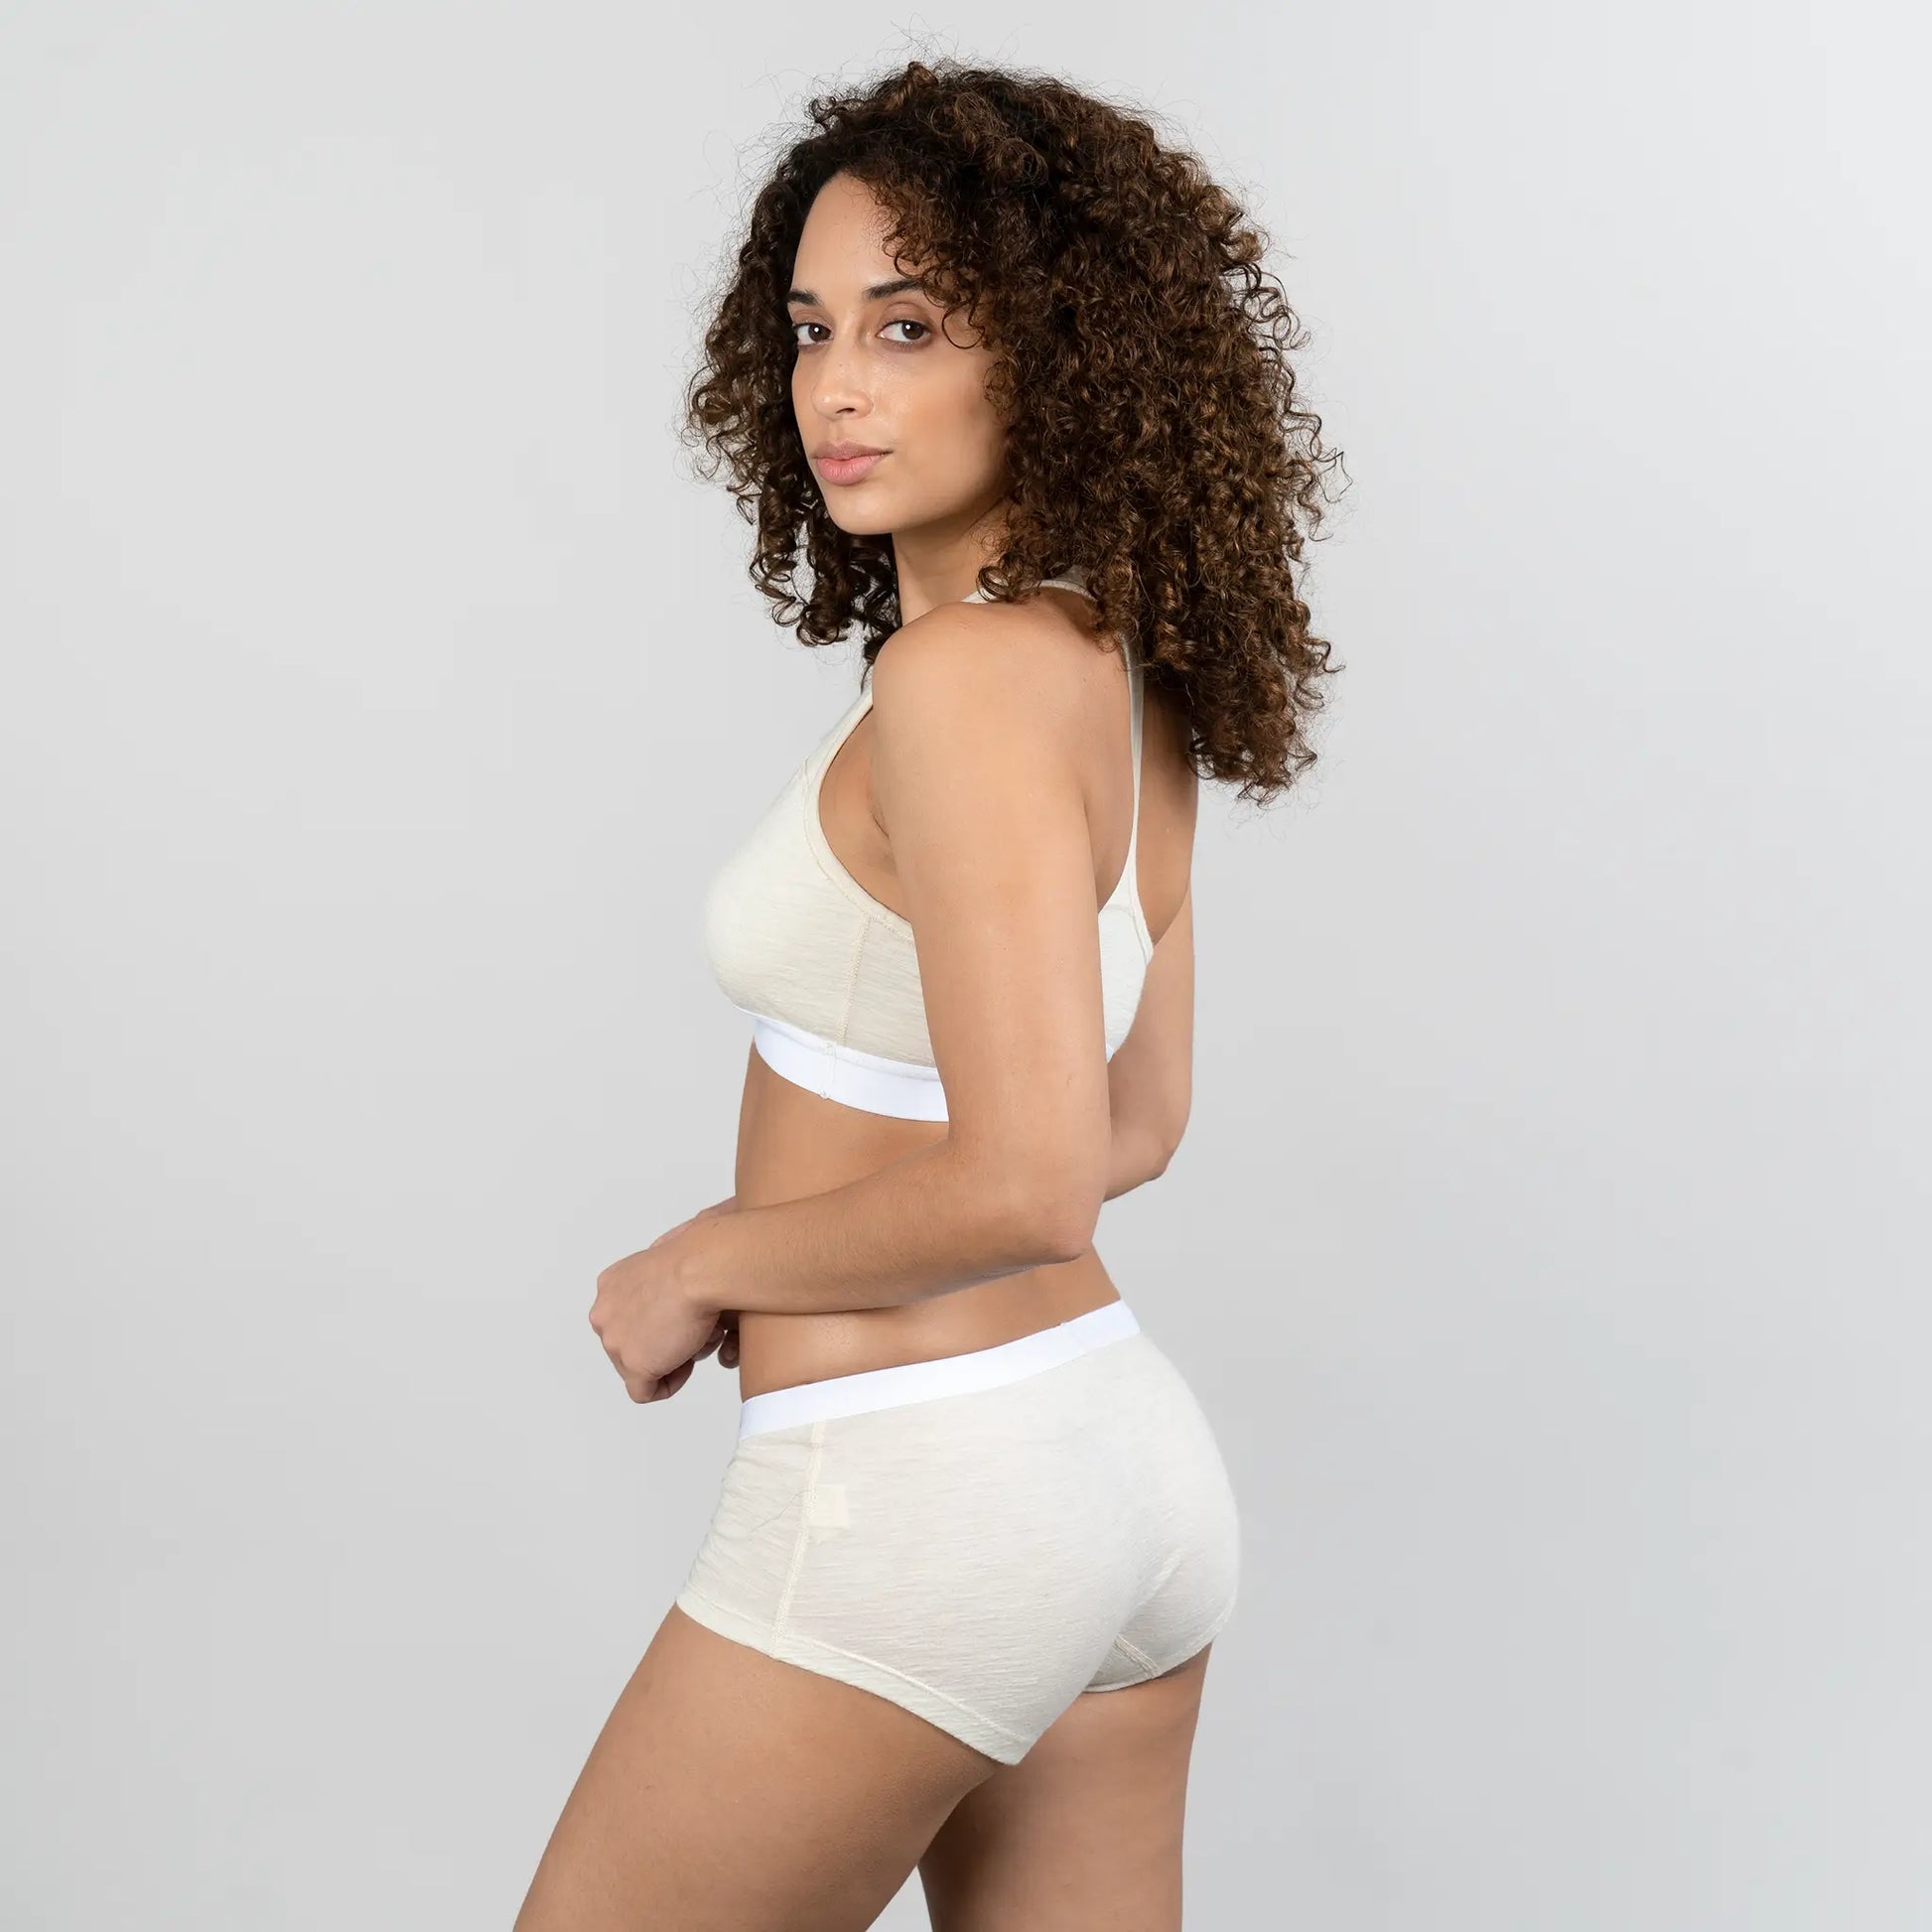  womens single origin sports bra ultralight color natural white